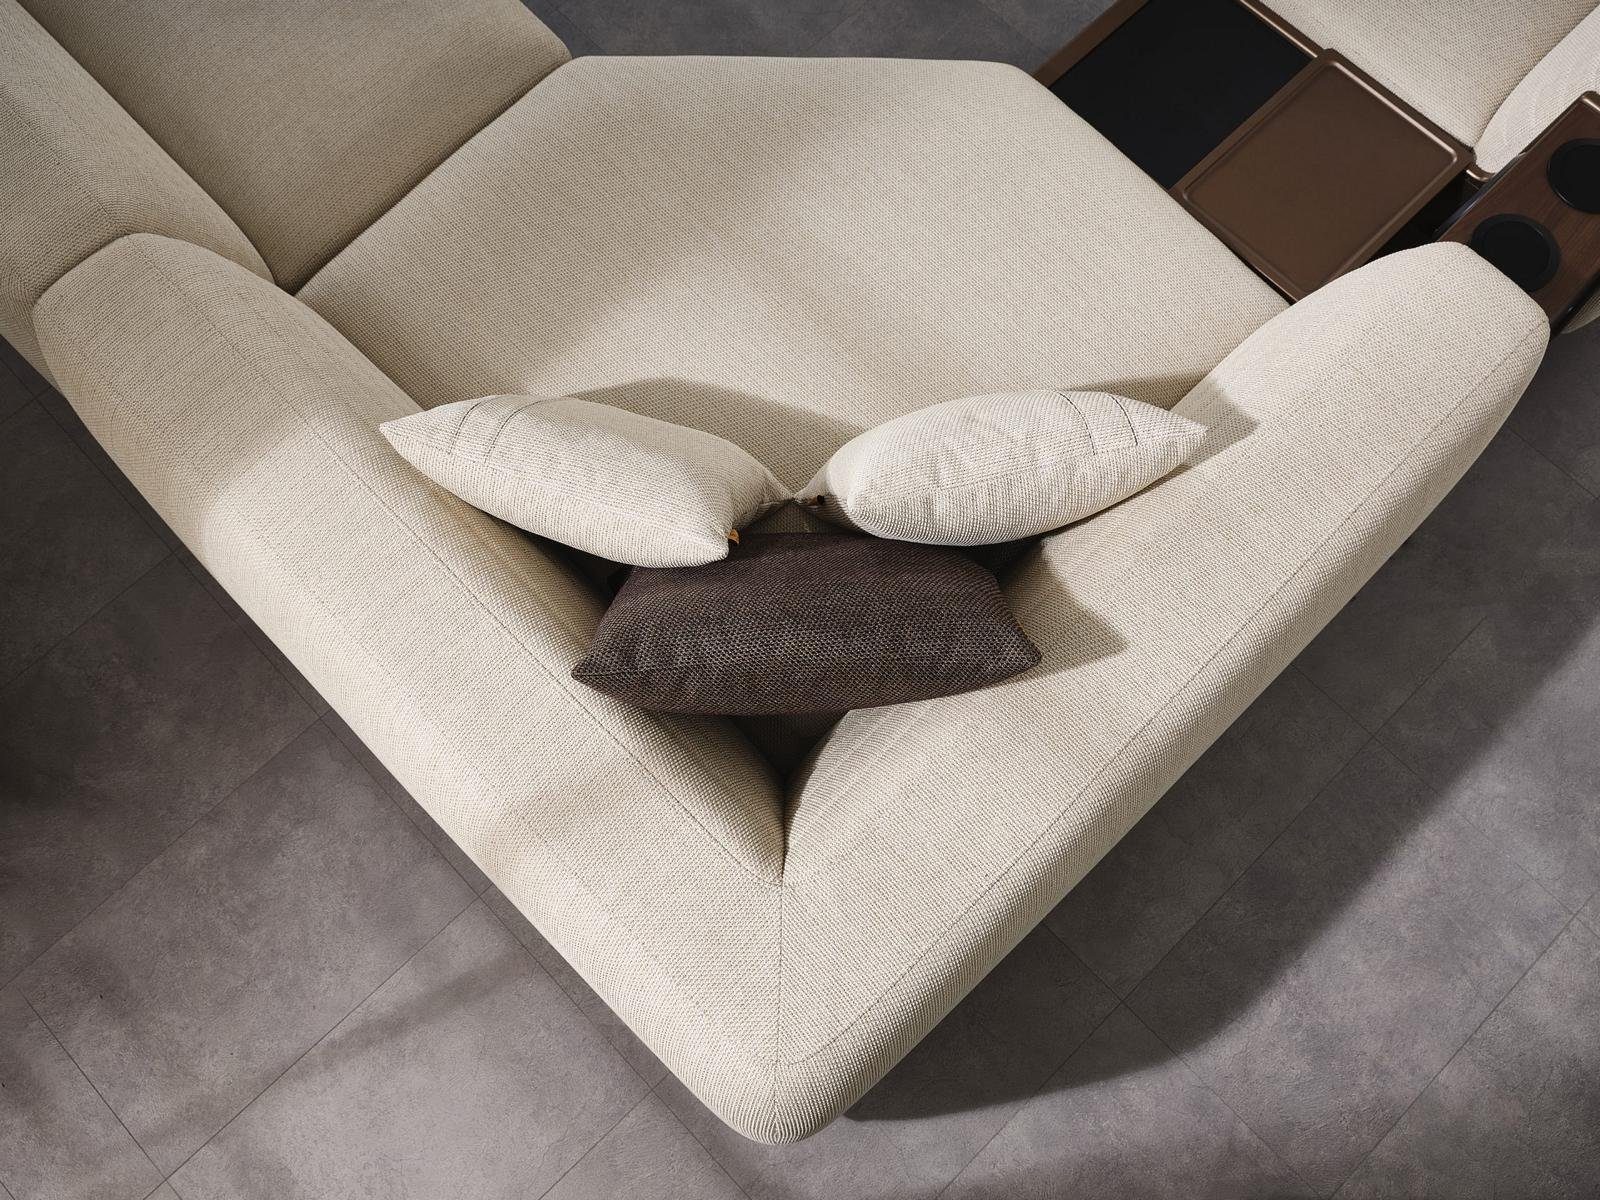 JVmoebel Ecksofa Luxus Ecksofa Textil, Europa Wohnzimmer Teile, U-Form Couch in Möbel Made Sofa Polster 8